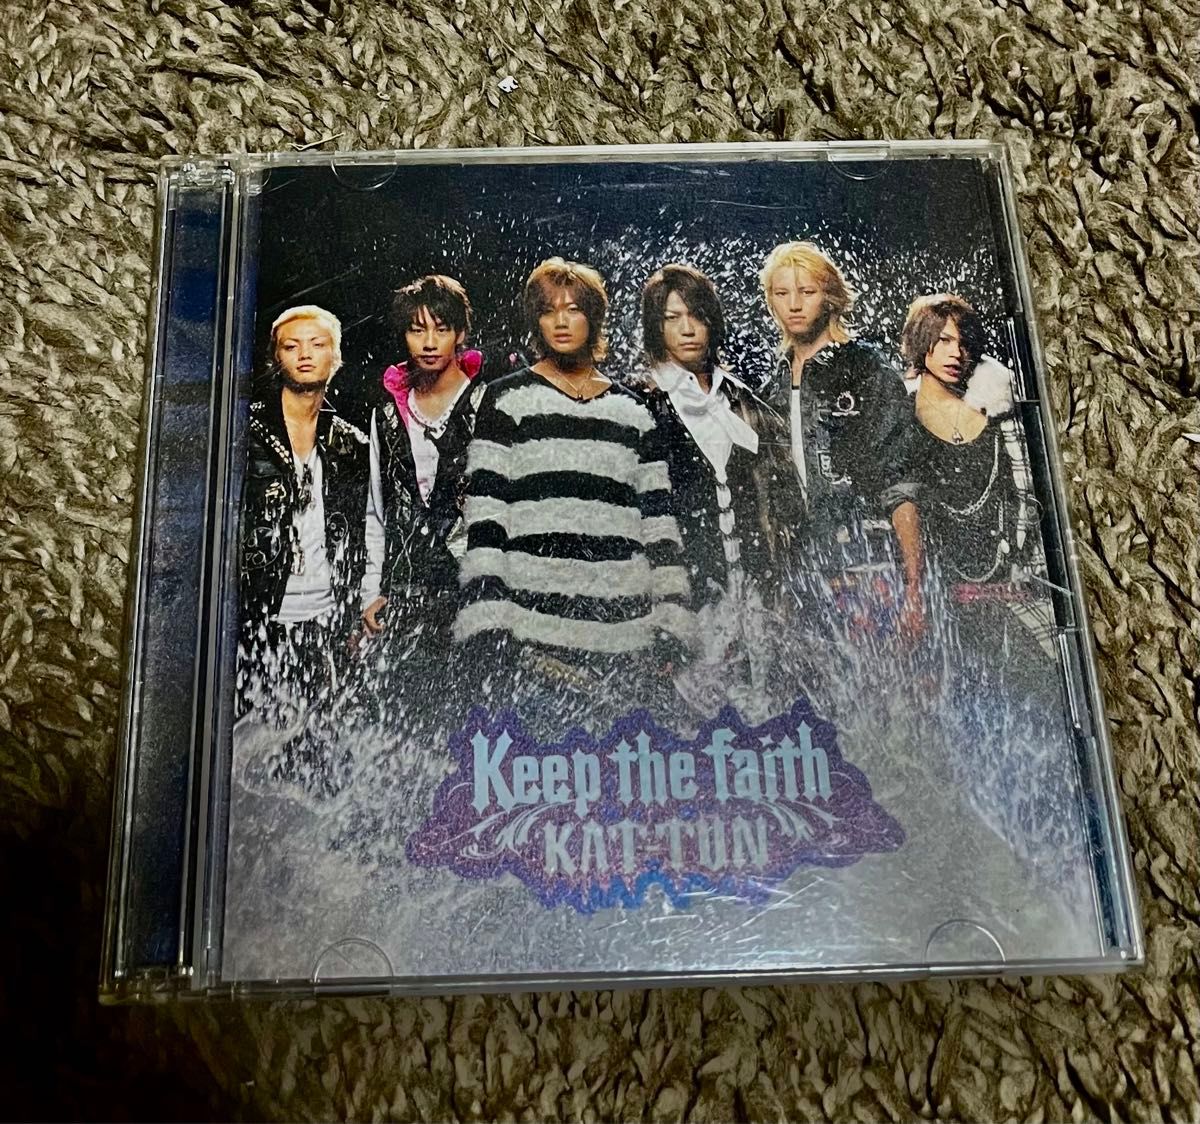 KATTUN kepp the face  CD T